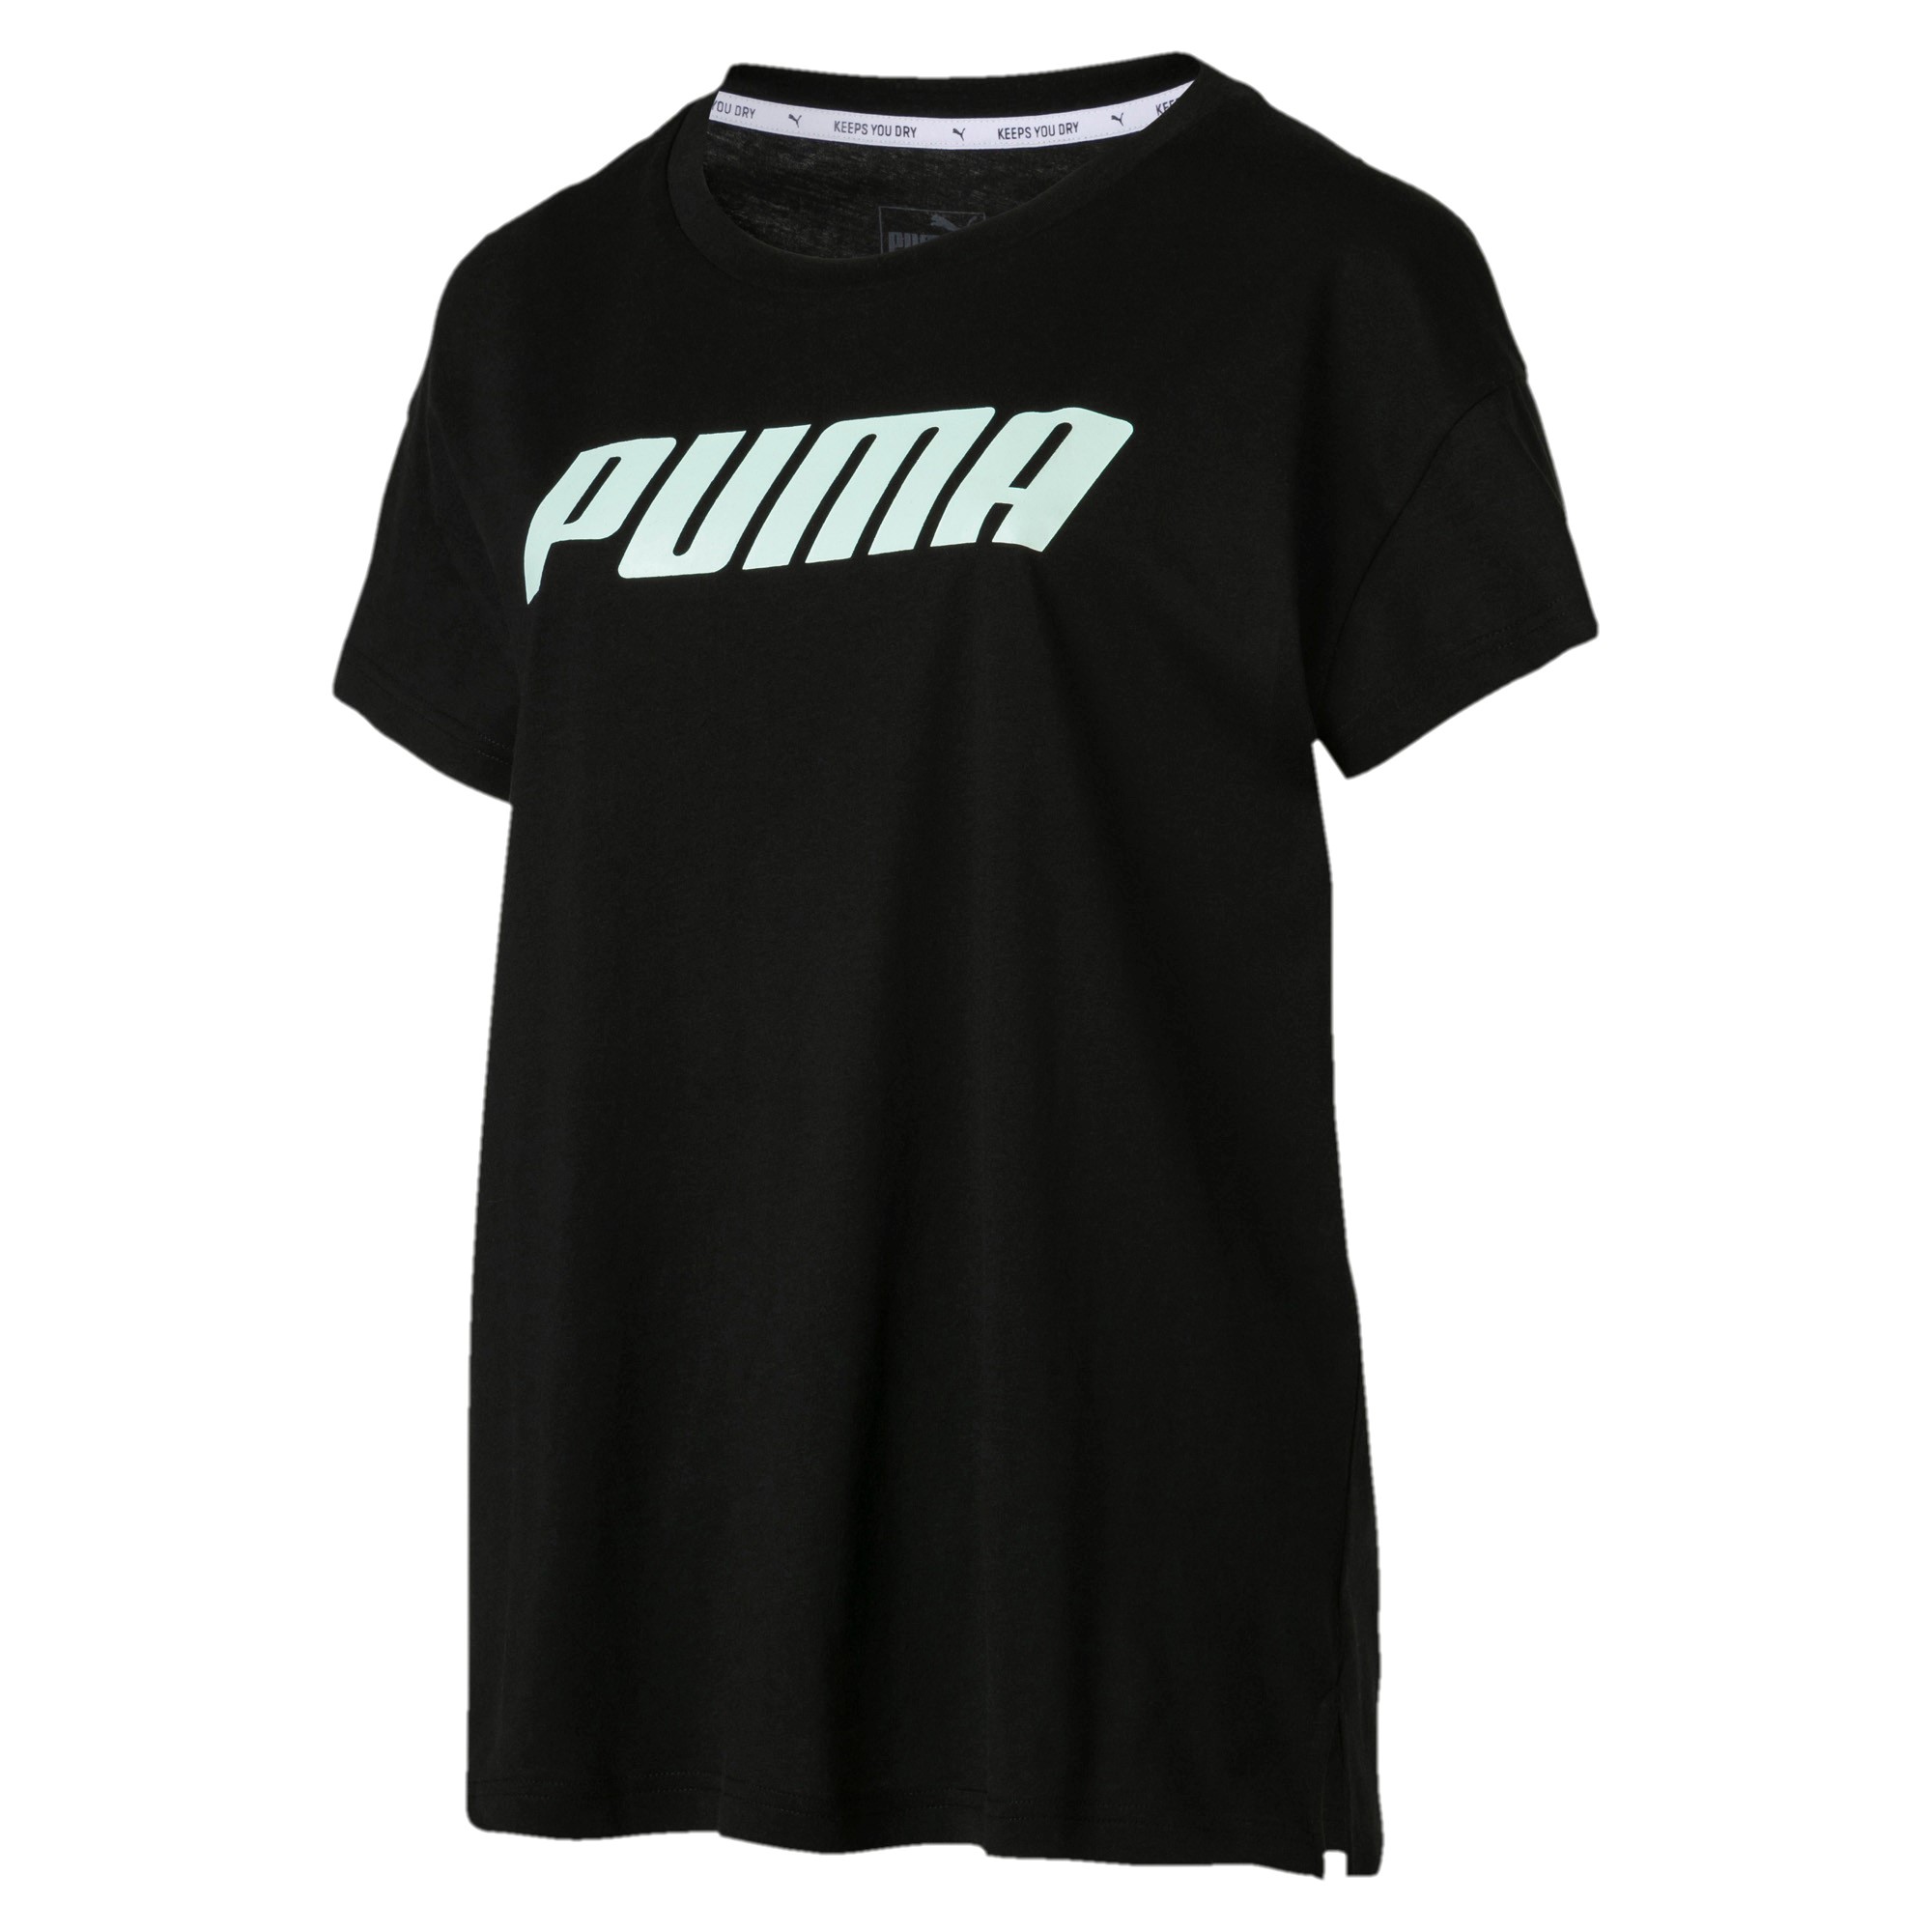 PUMA Damen Modern Sports Logo Tee DryCell T-Shirt schwarz 855188 01